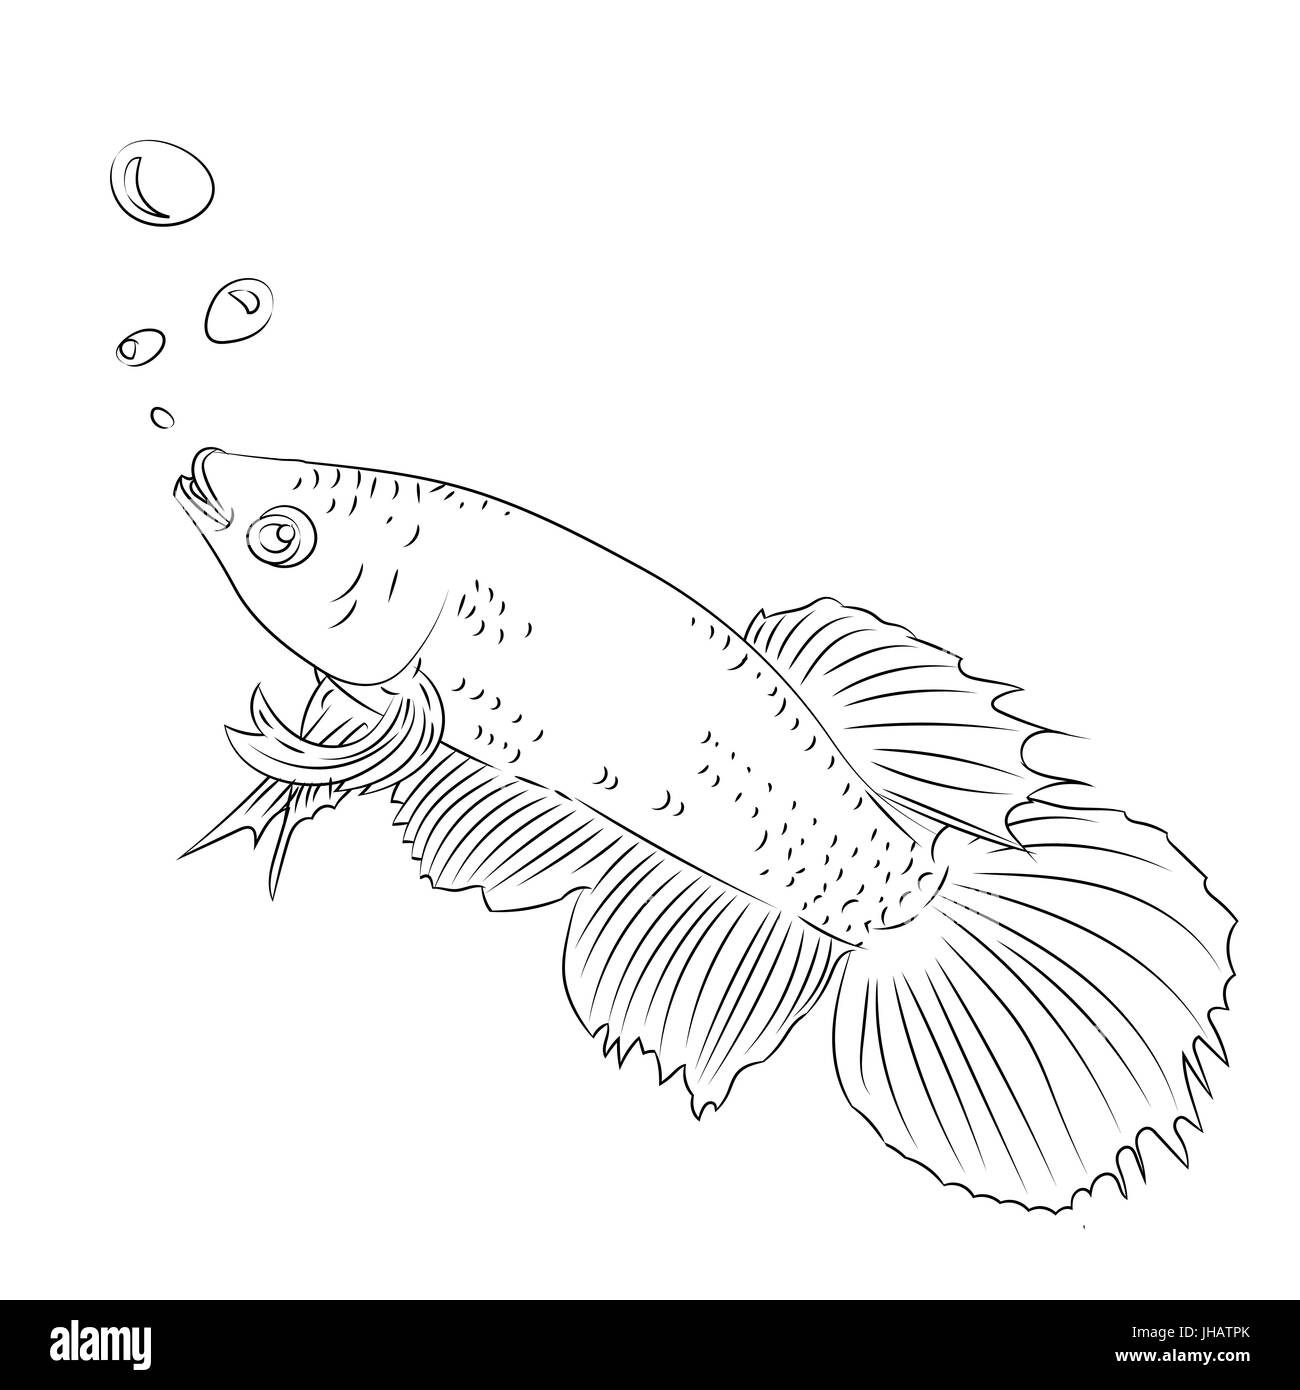 Hand gezeichnete Skizze von kämpfen Fisch Cartoon isoliert, schwarz / weiß-Cartoon-Vektor-Illustration für Coloring Book - Linie gezeichnet Vektor Stock Vektor